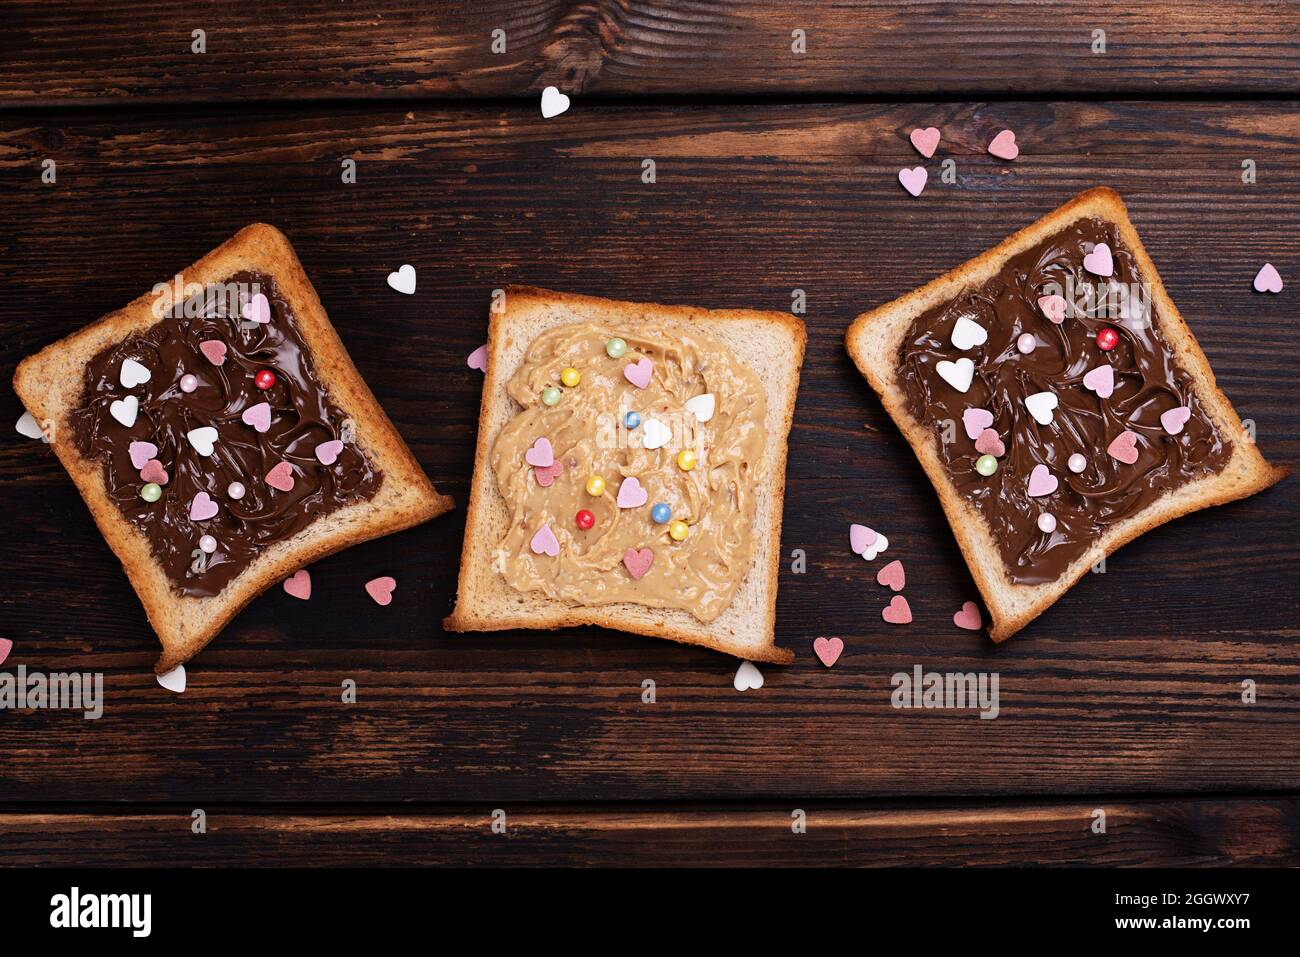 Drei Toast mit Schokoladenpaste und Erdnussbutter, mit bunten Herzen bestreut, auf einem dunklen Holzhintergrund, Draufsicht. Stockfoto